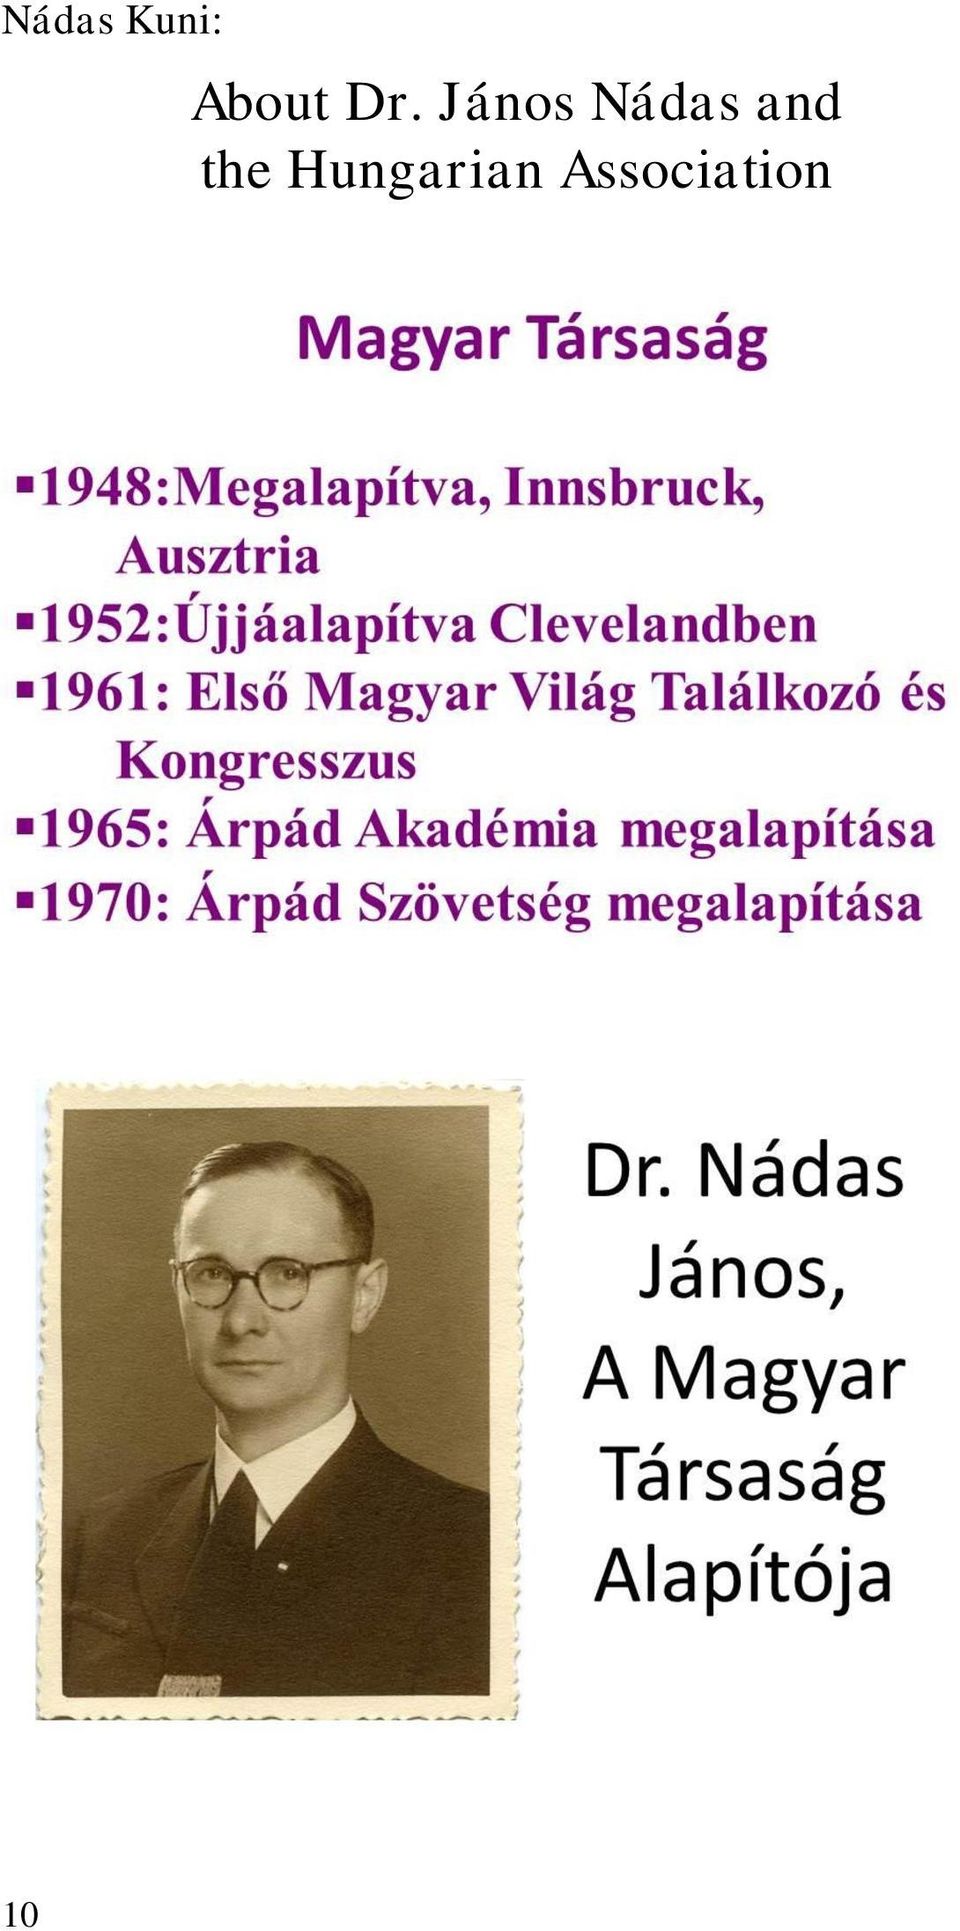 János Nádas and